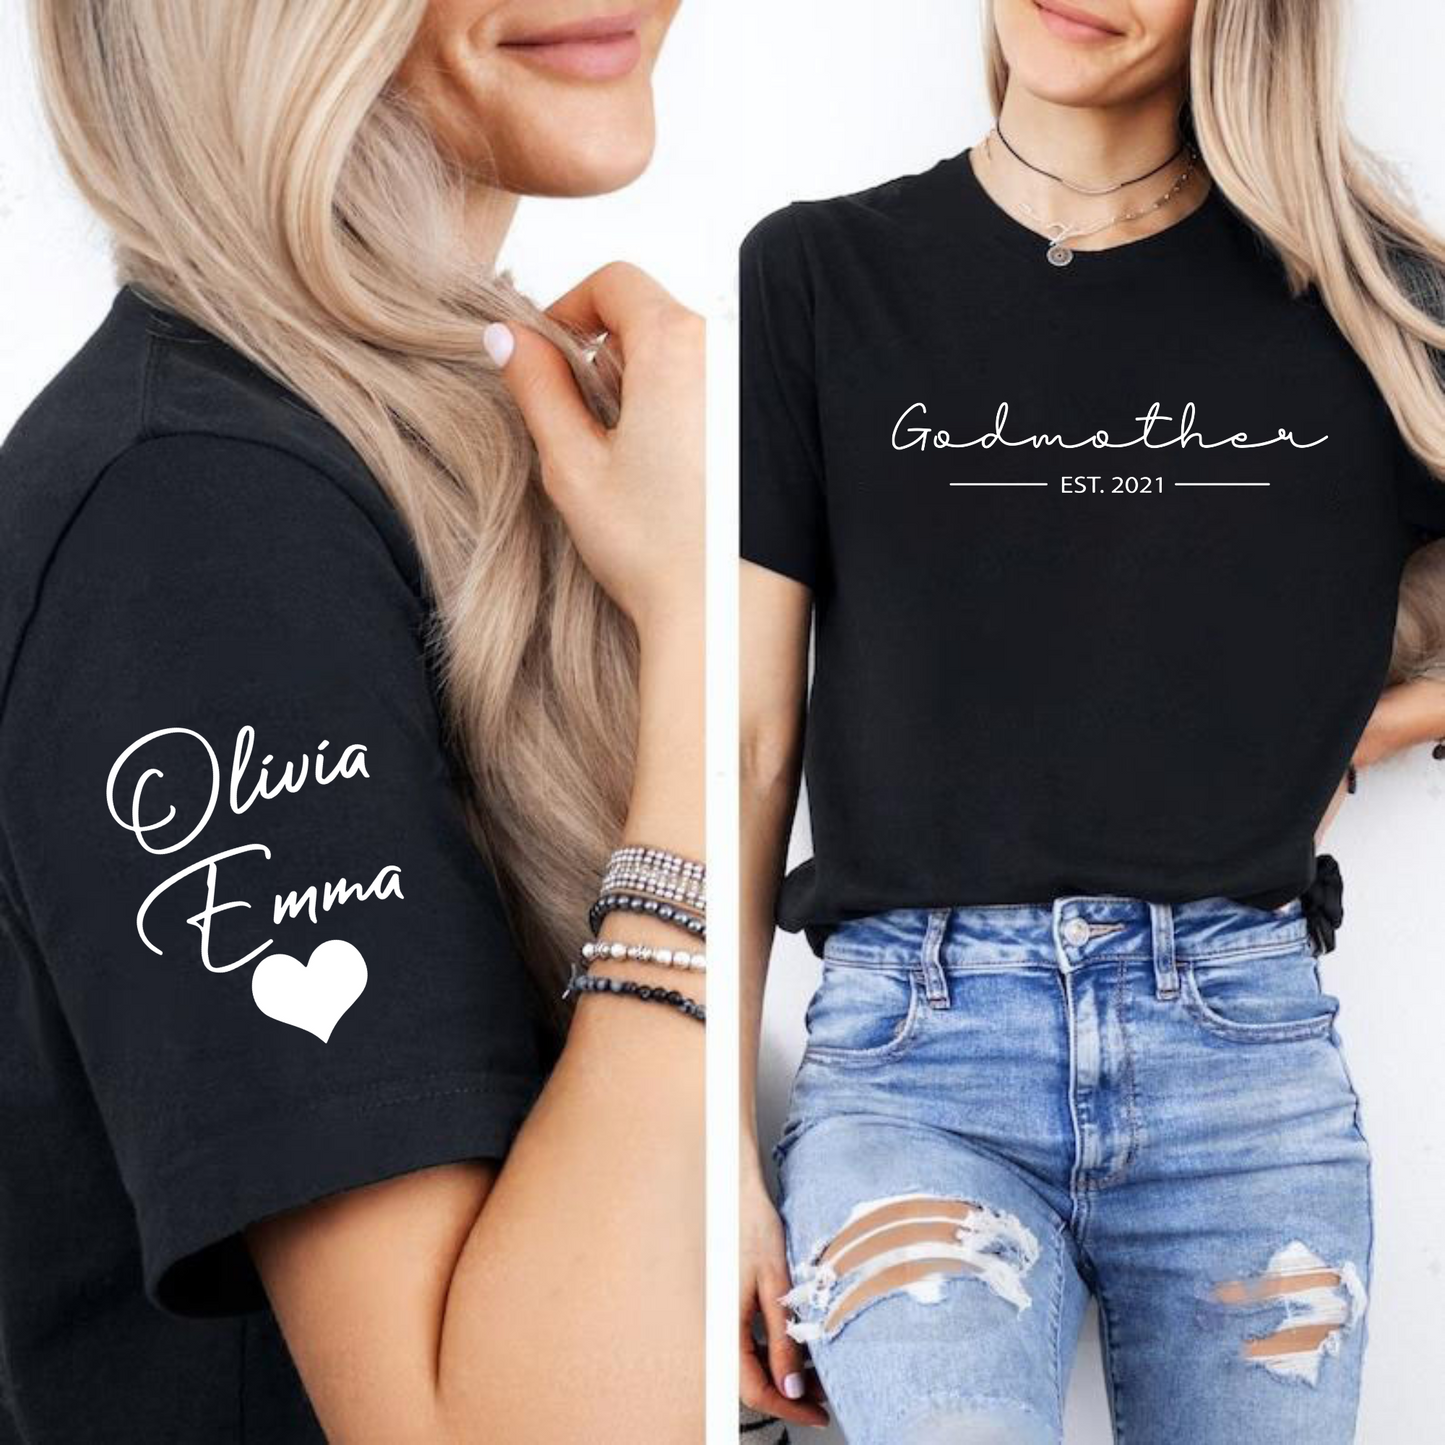 Patin mit Herz Damen-T-Shirt – Individualisierbar mit Namen und Jahr